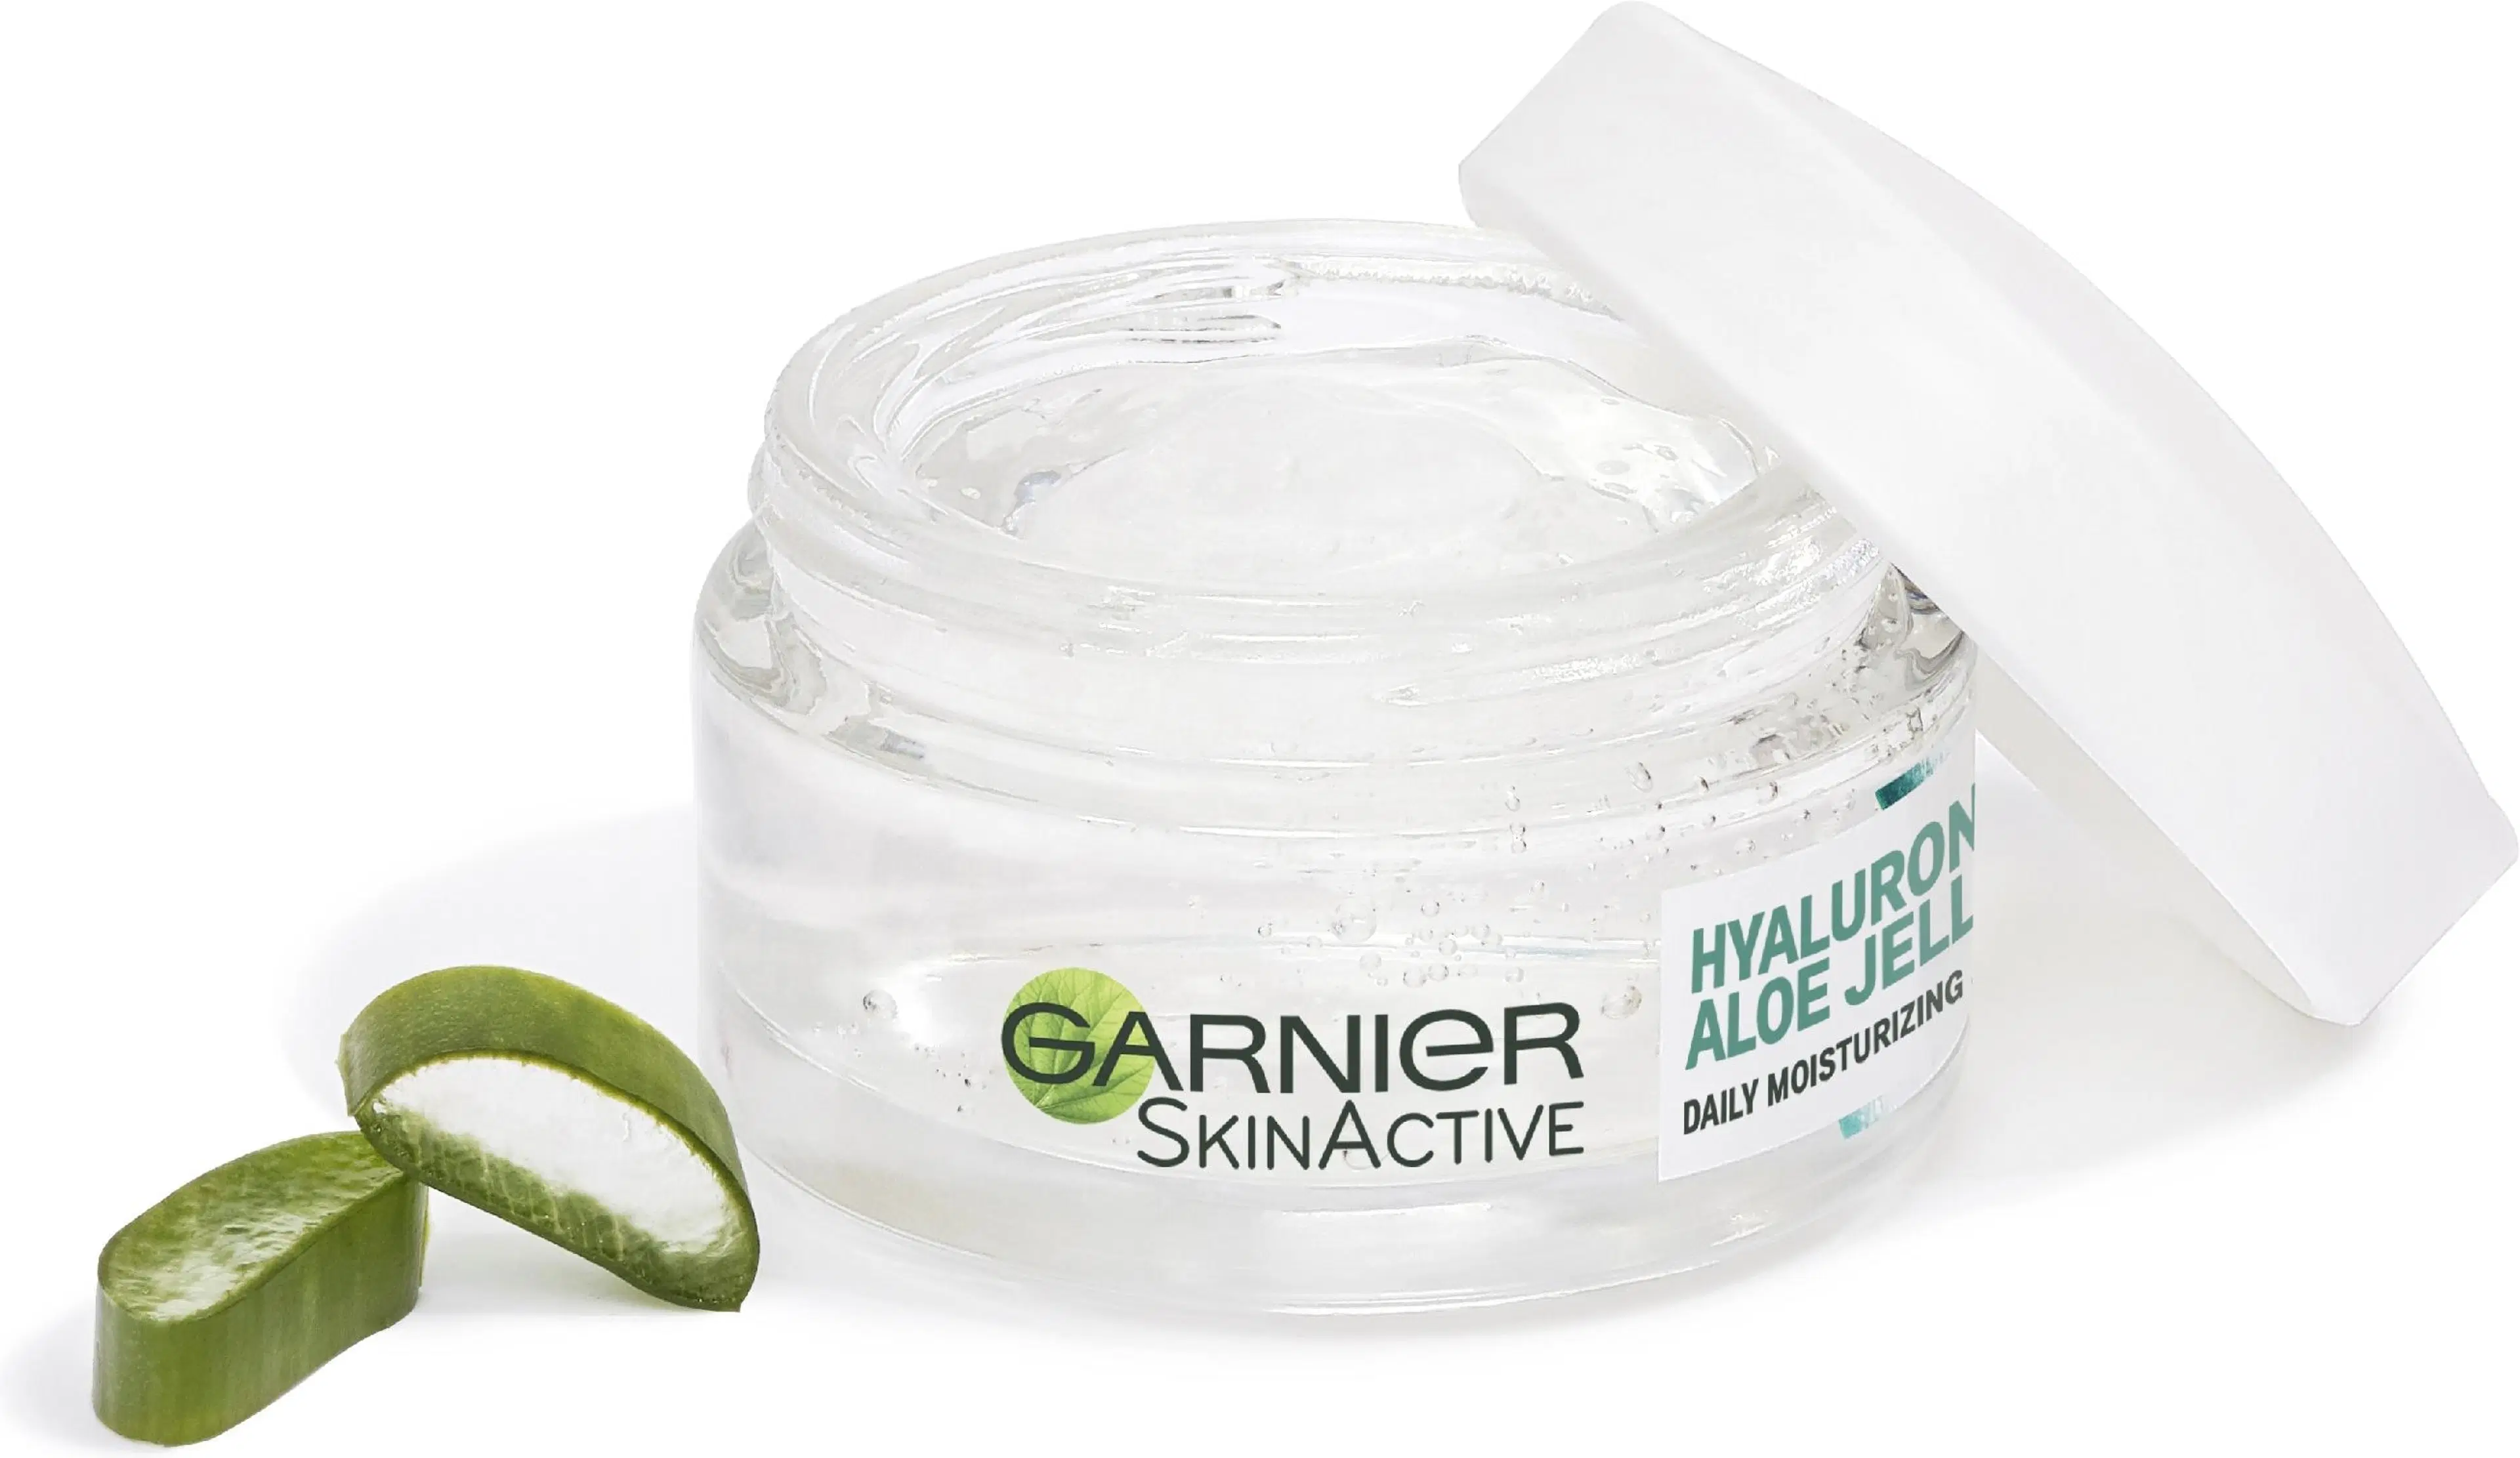 Garnier SkinActive Hyaluronic Aloe Jelly kosteuttava geelivoide 50ml